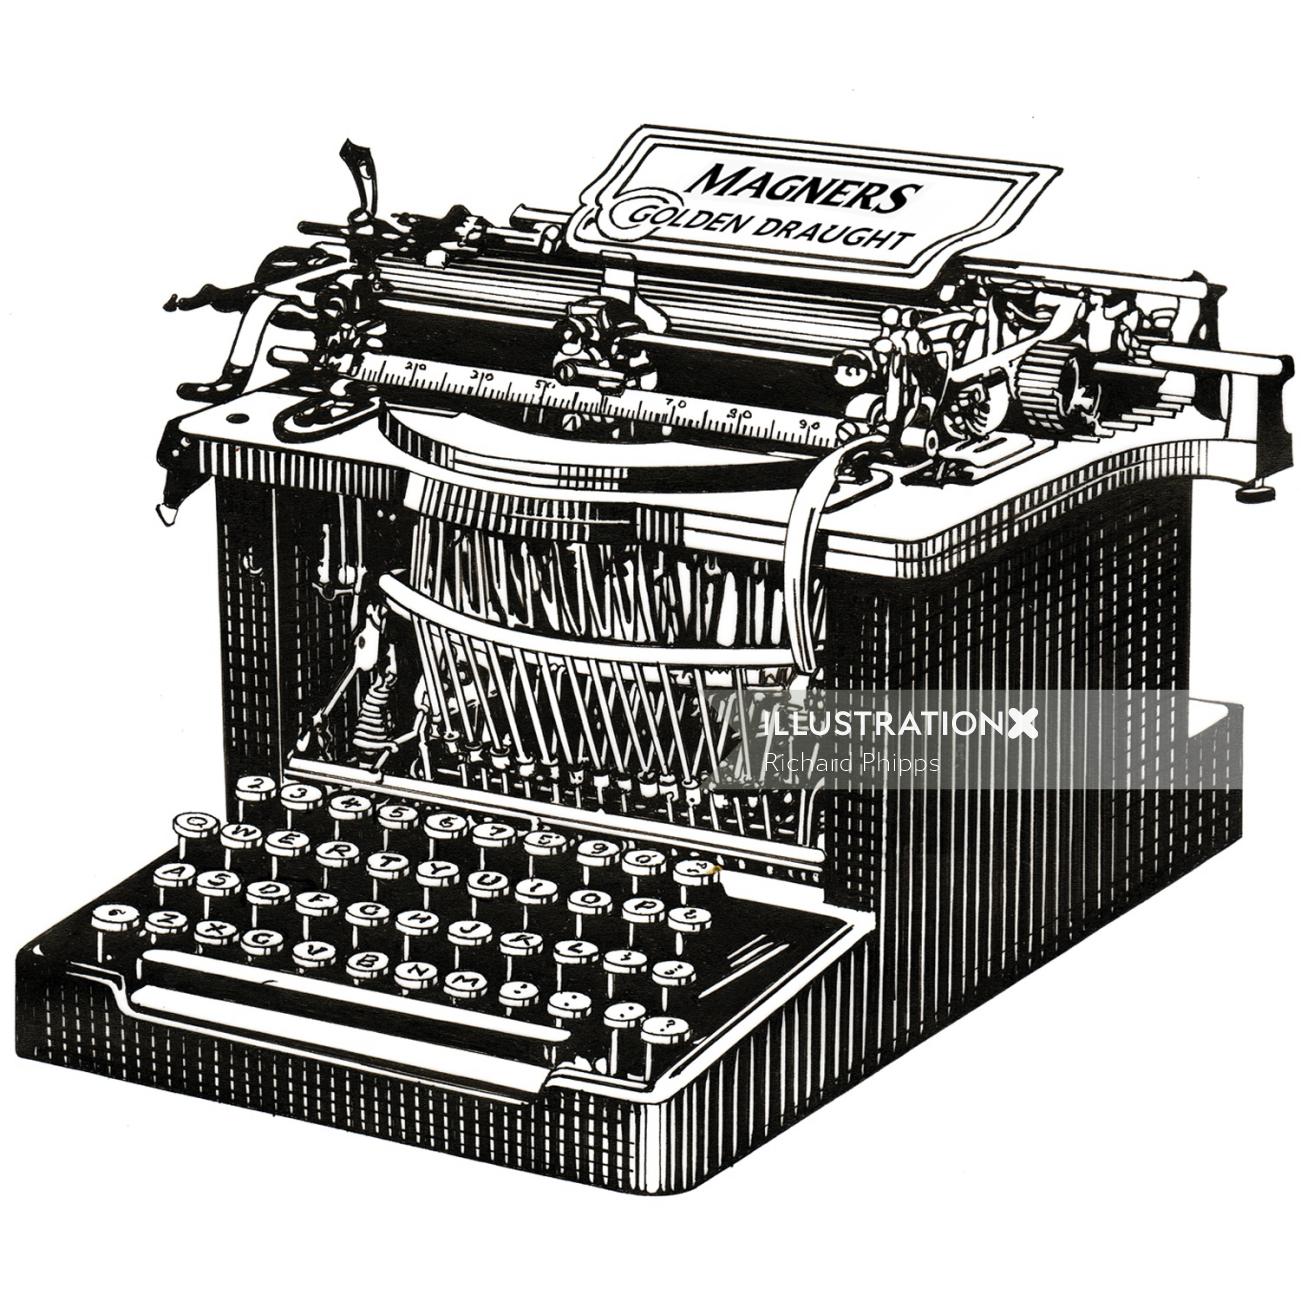 Conception de machine à écrire classique pour la campagne de Magners Cider